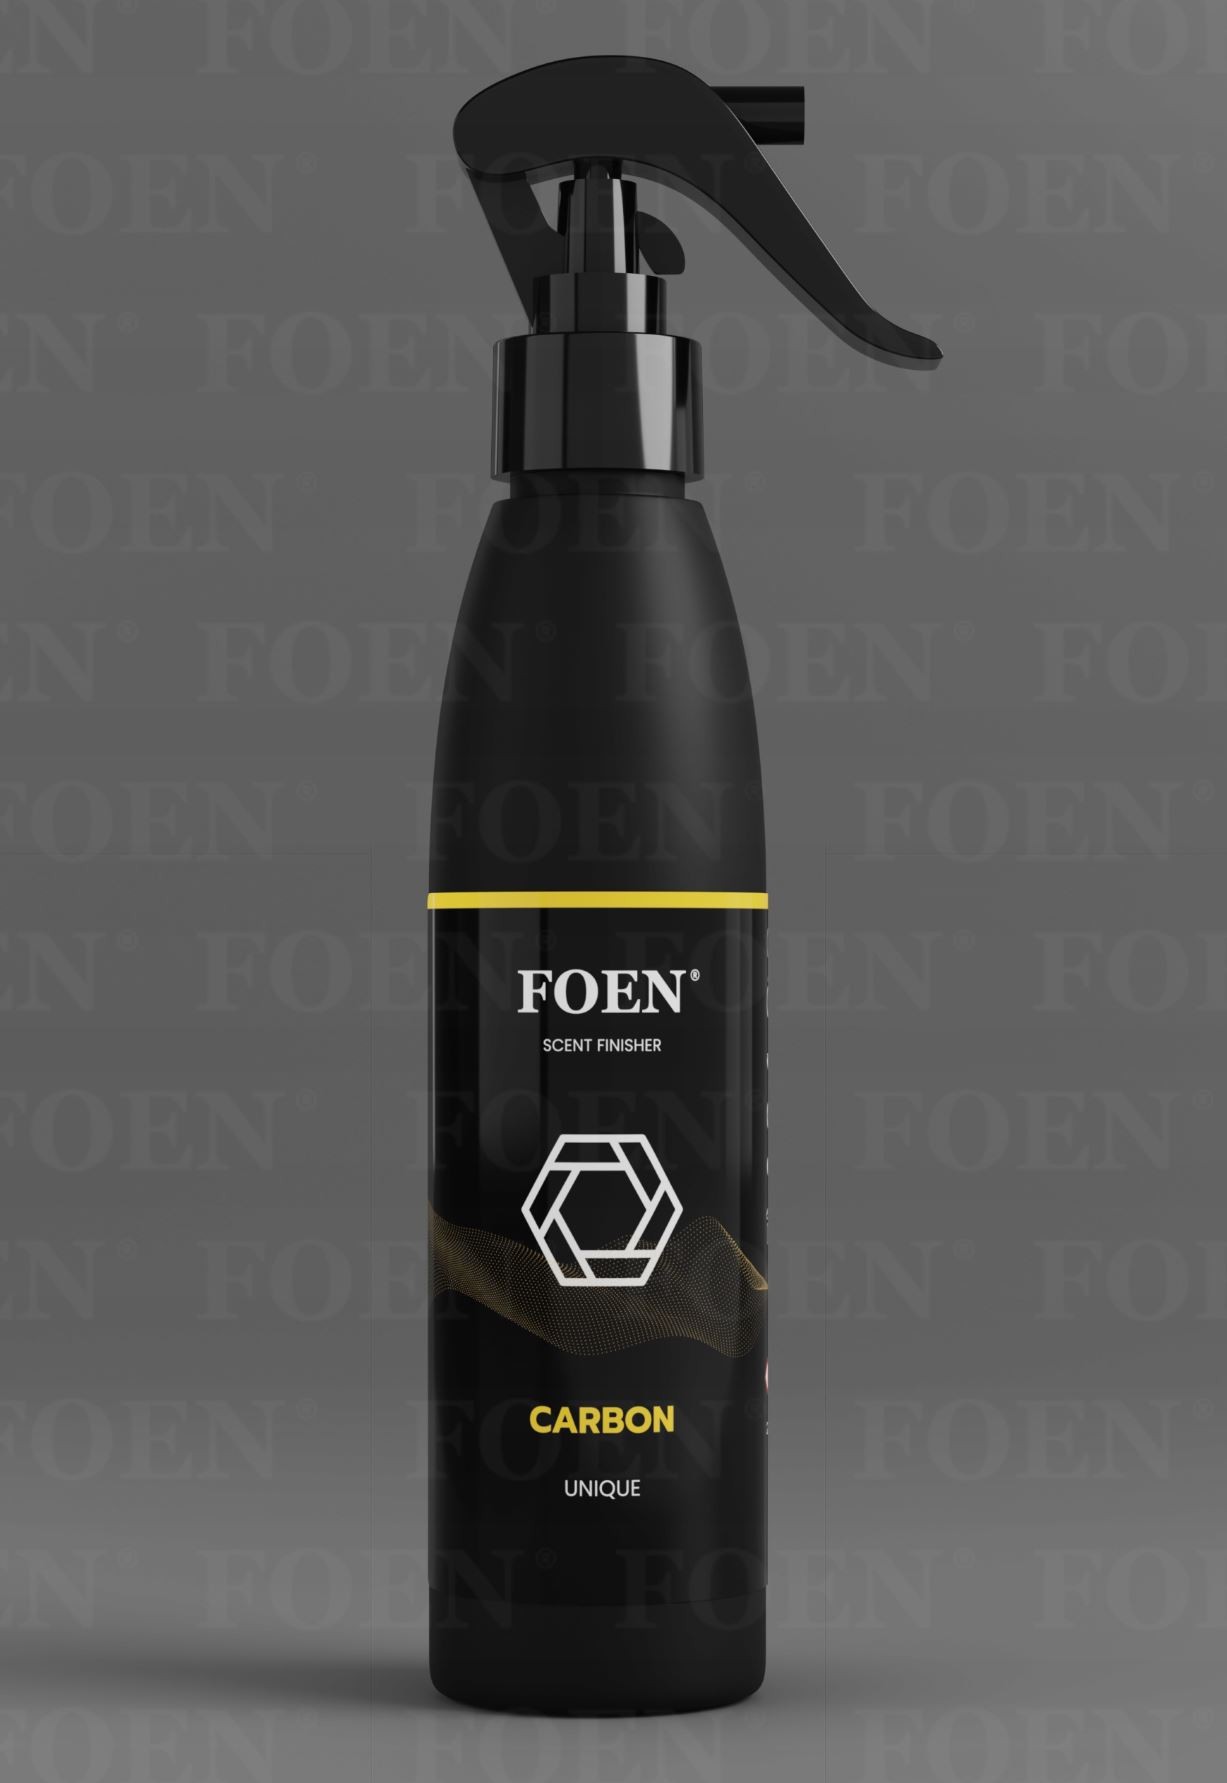 Interiérová vůně Foen Carbon (200 ml)